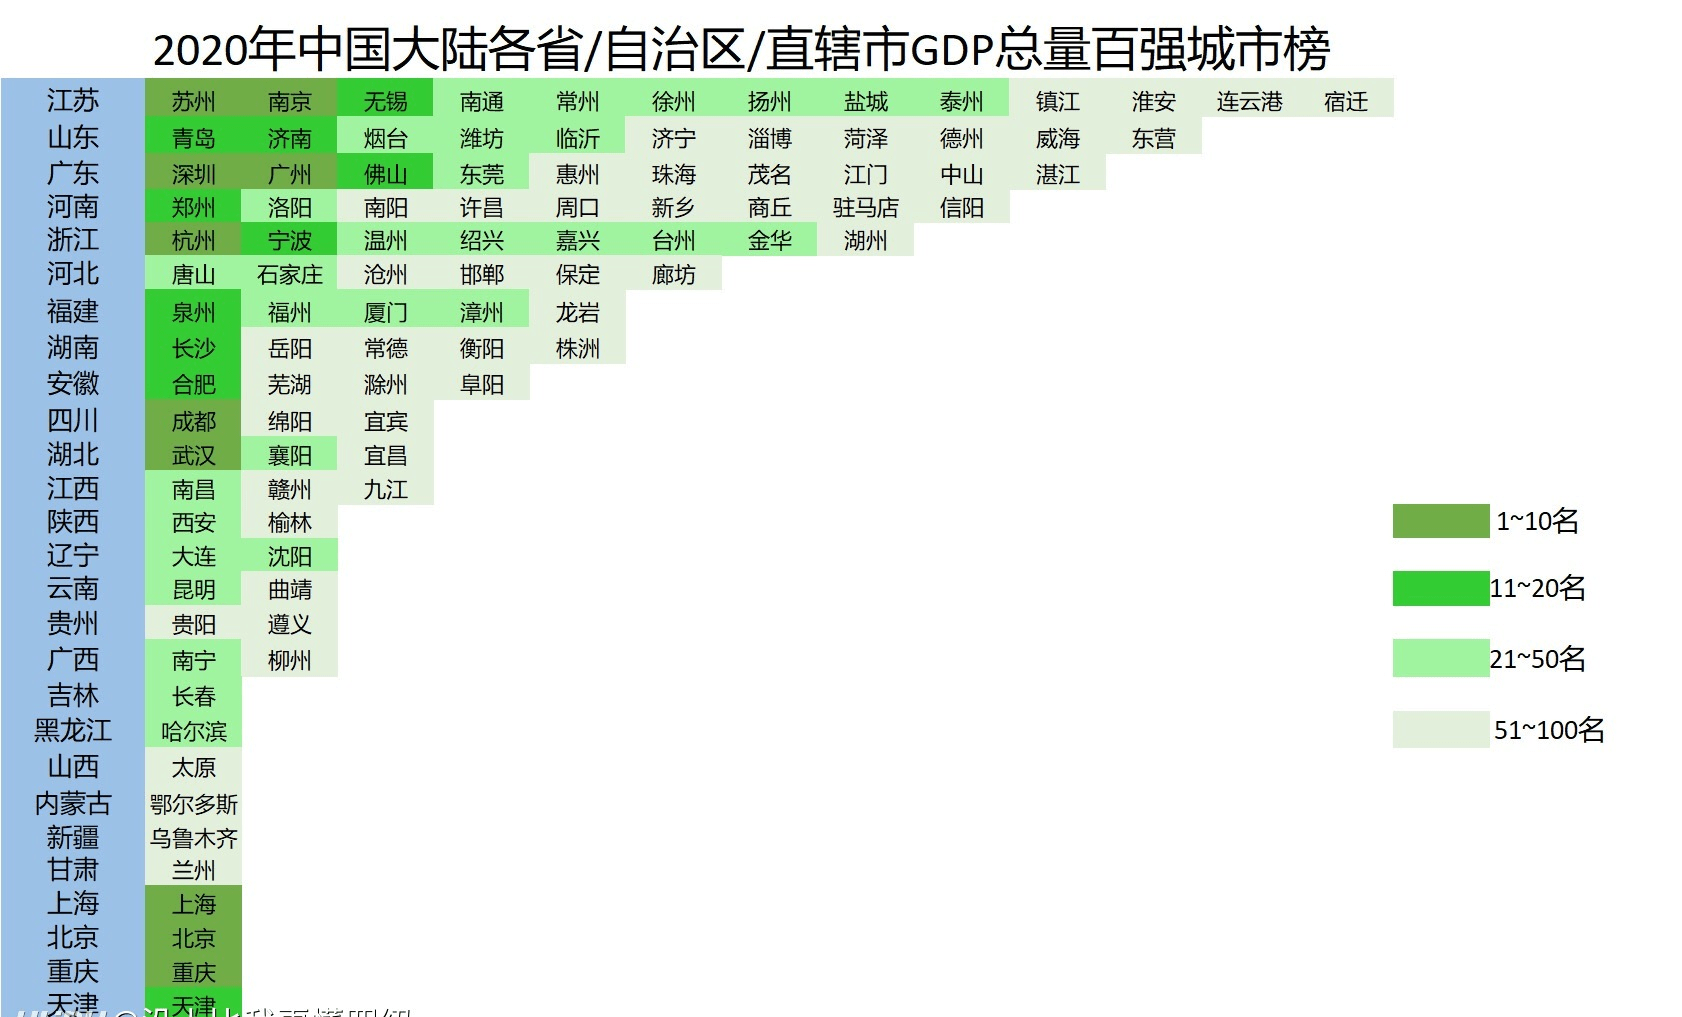 2020中国自治区gdp排名_新鲜出炉 中国31省市自治区GDP总量排名1978 2020